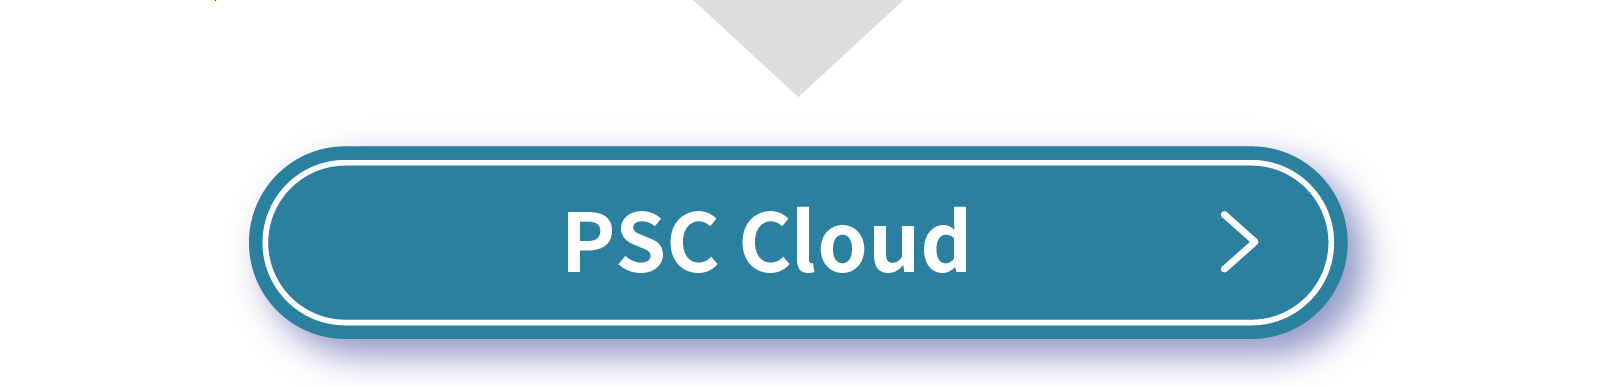 PSC Cloud Service